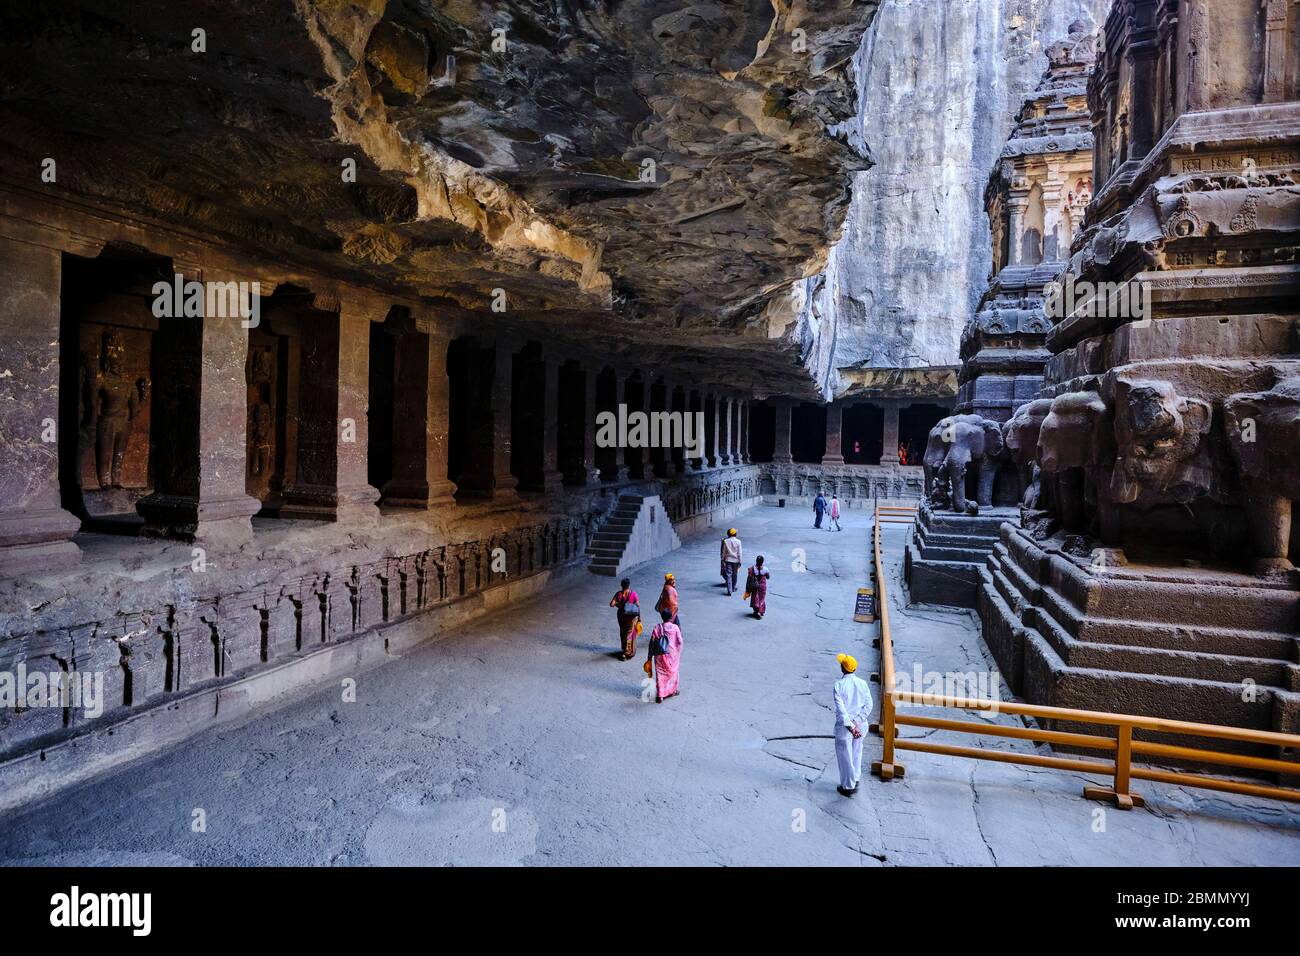 Inde, Maharashtra, temple de la grotte d'Ellora, patrimoine mondial de l'UNESCO, temple de Kailash, 8ème siècle, grotte N°16 Banque D'Images